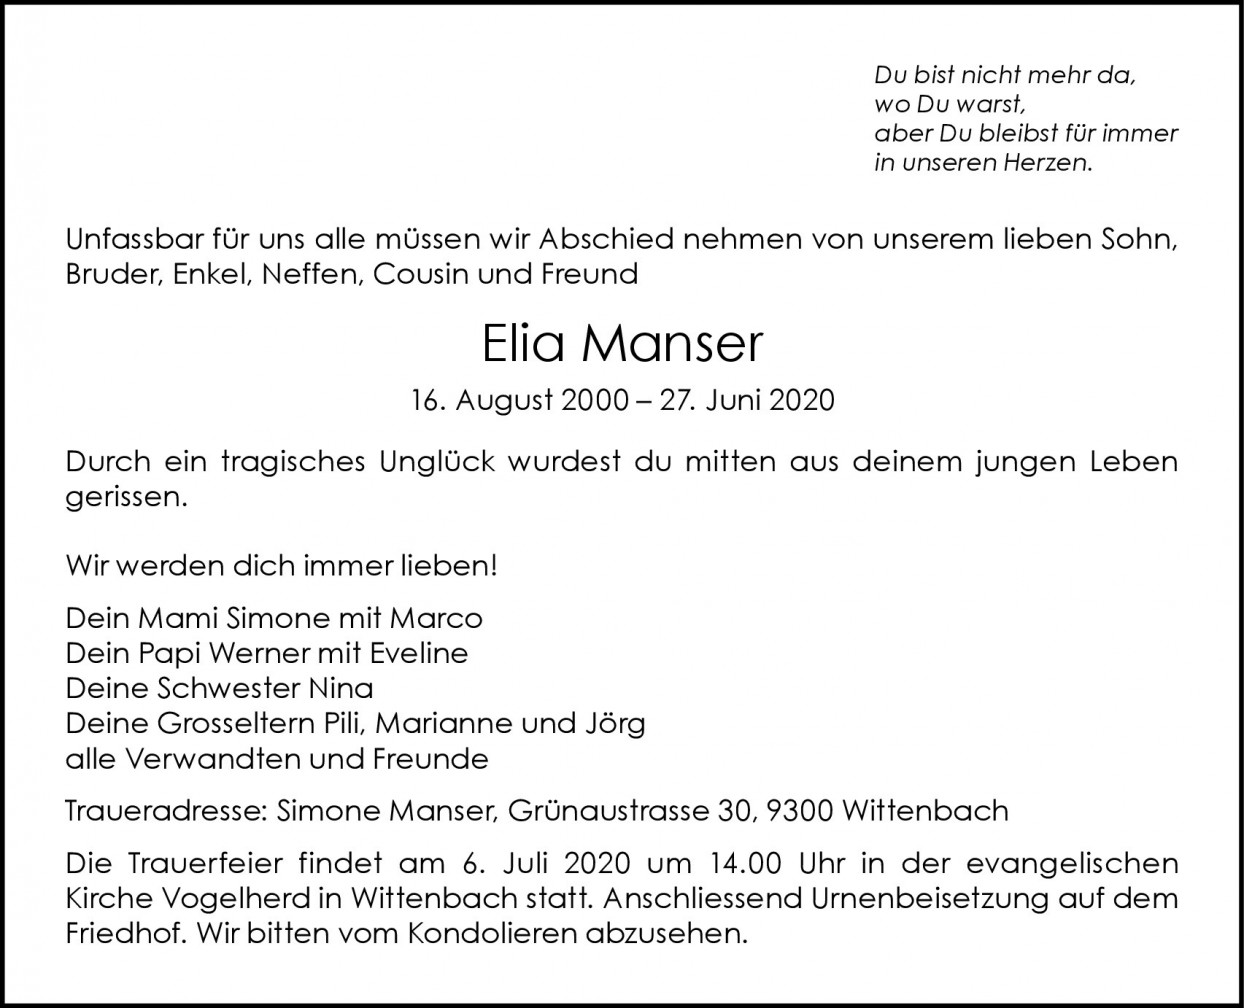 Elia Manser